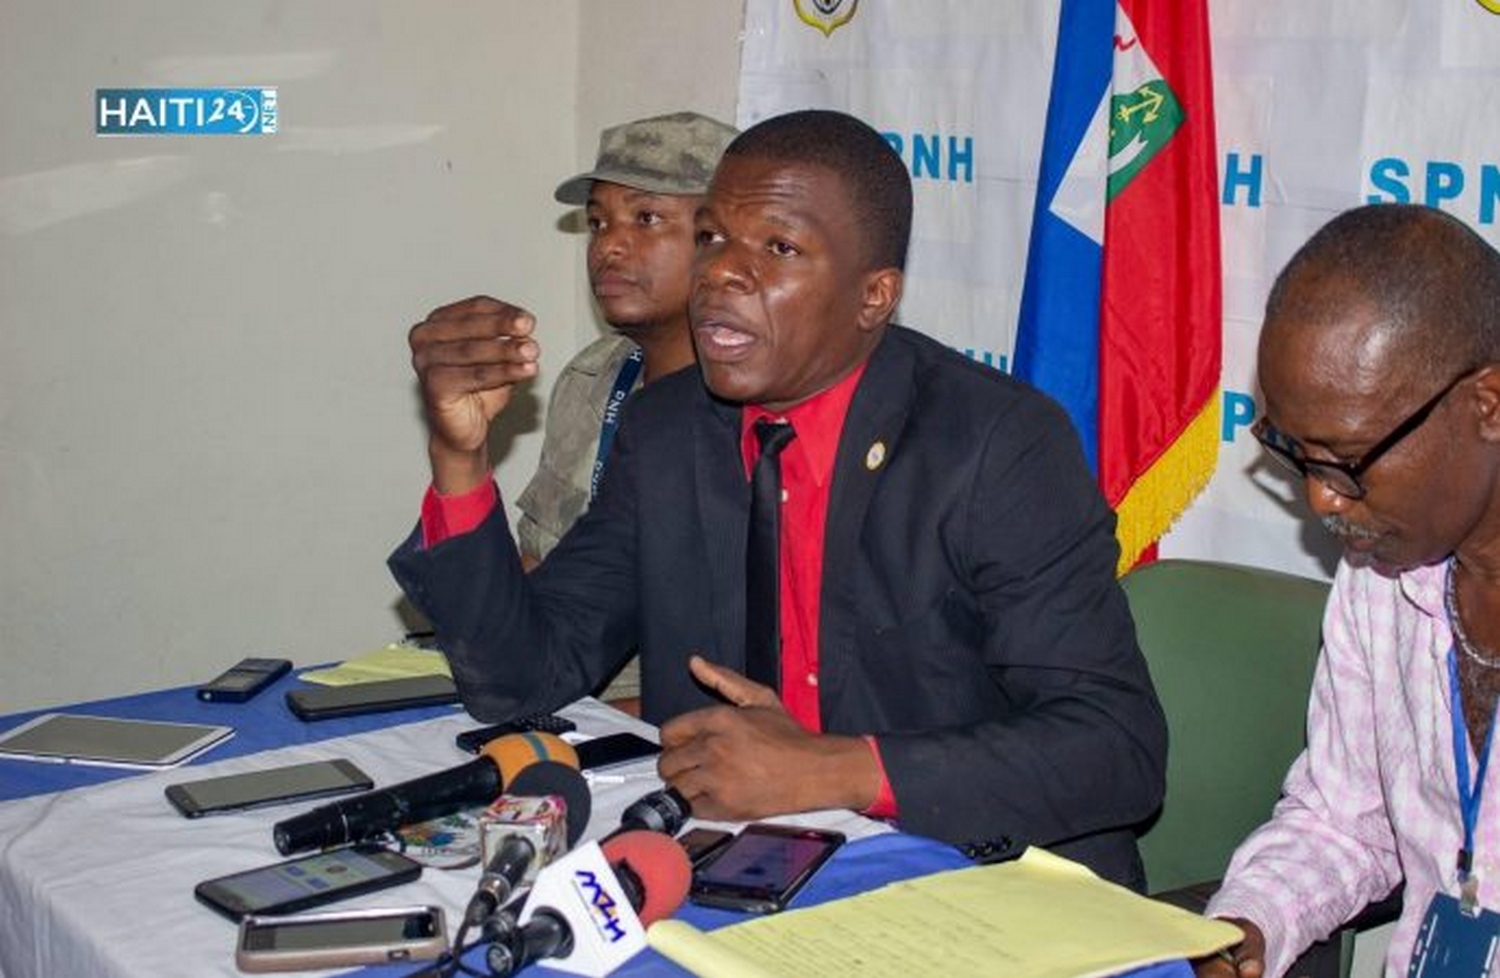 Le PM Ariel Henry veut semer la division au sein de la classe politique haïtienne, déclare Me Arnel Remy